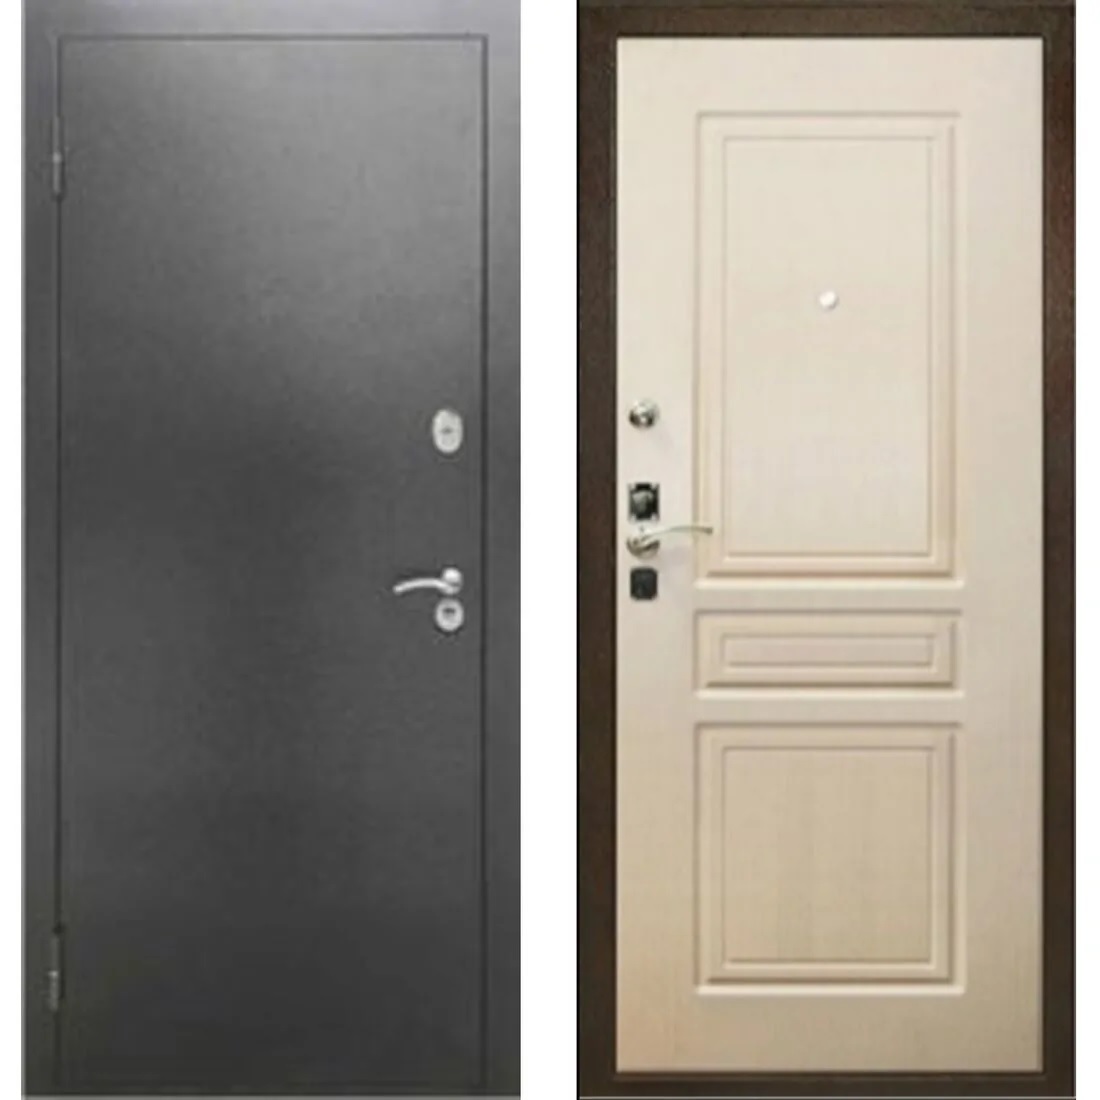 Дверь металлическая с терморазрывом Классика Гладкая Антик серебряный/ лиственница белая, левая